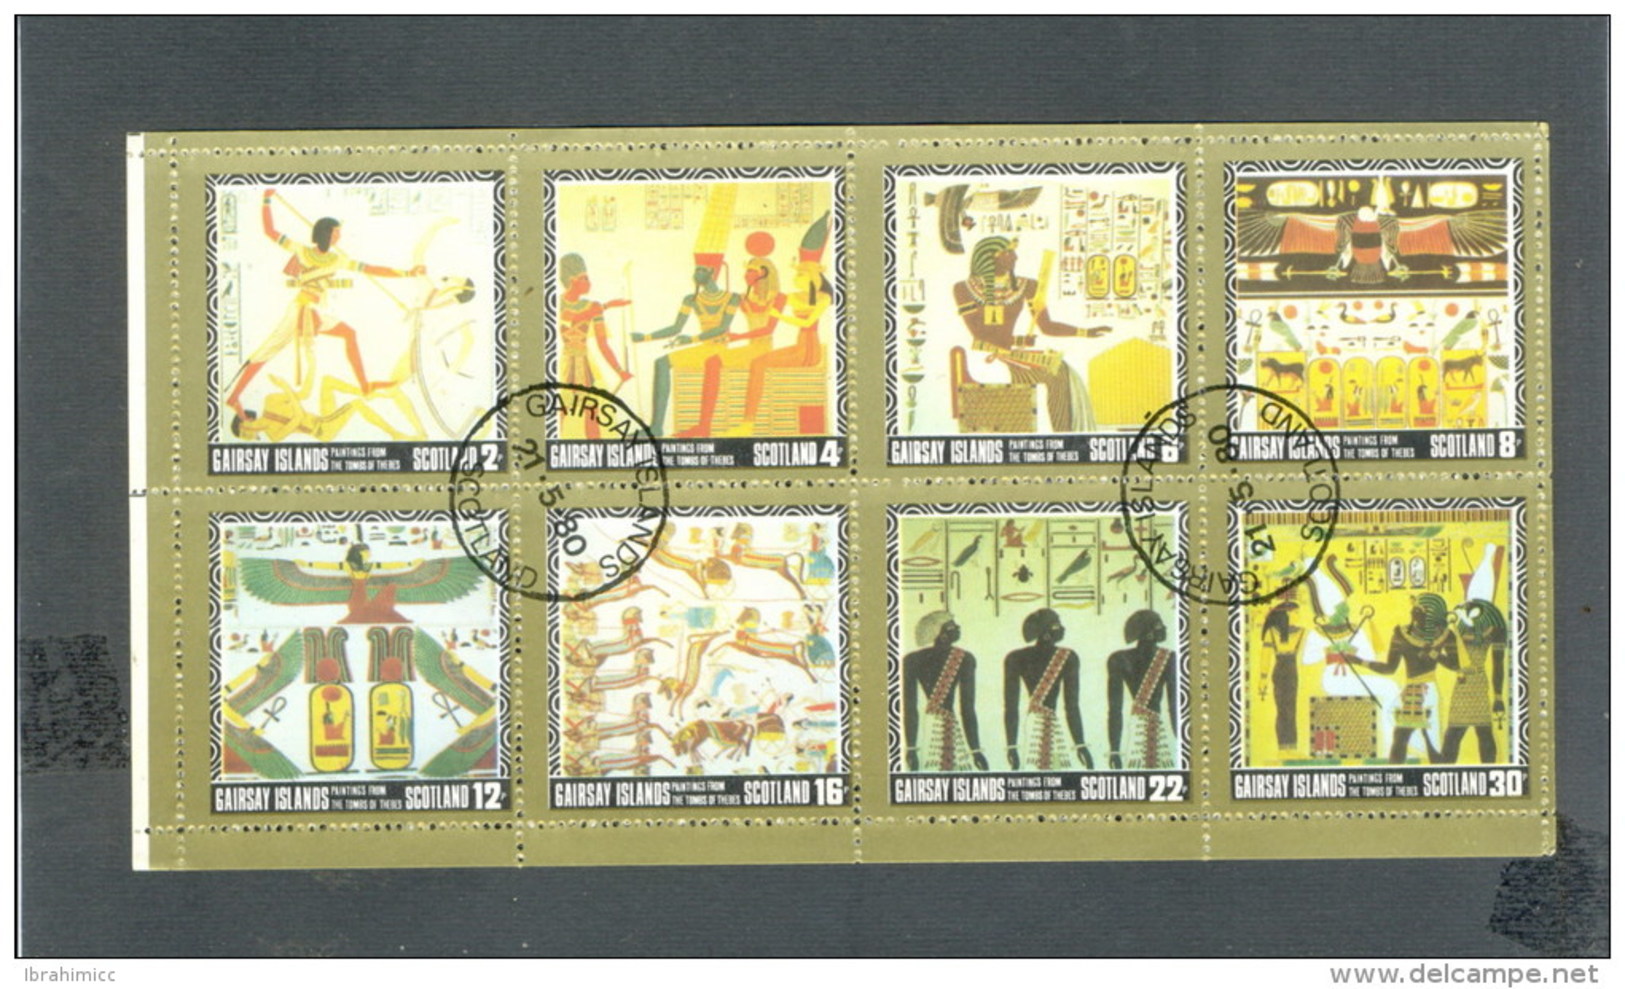 Stamps > Topics > History > Egyptology - Egyptology